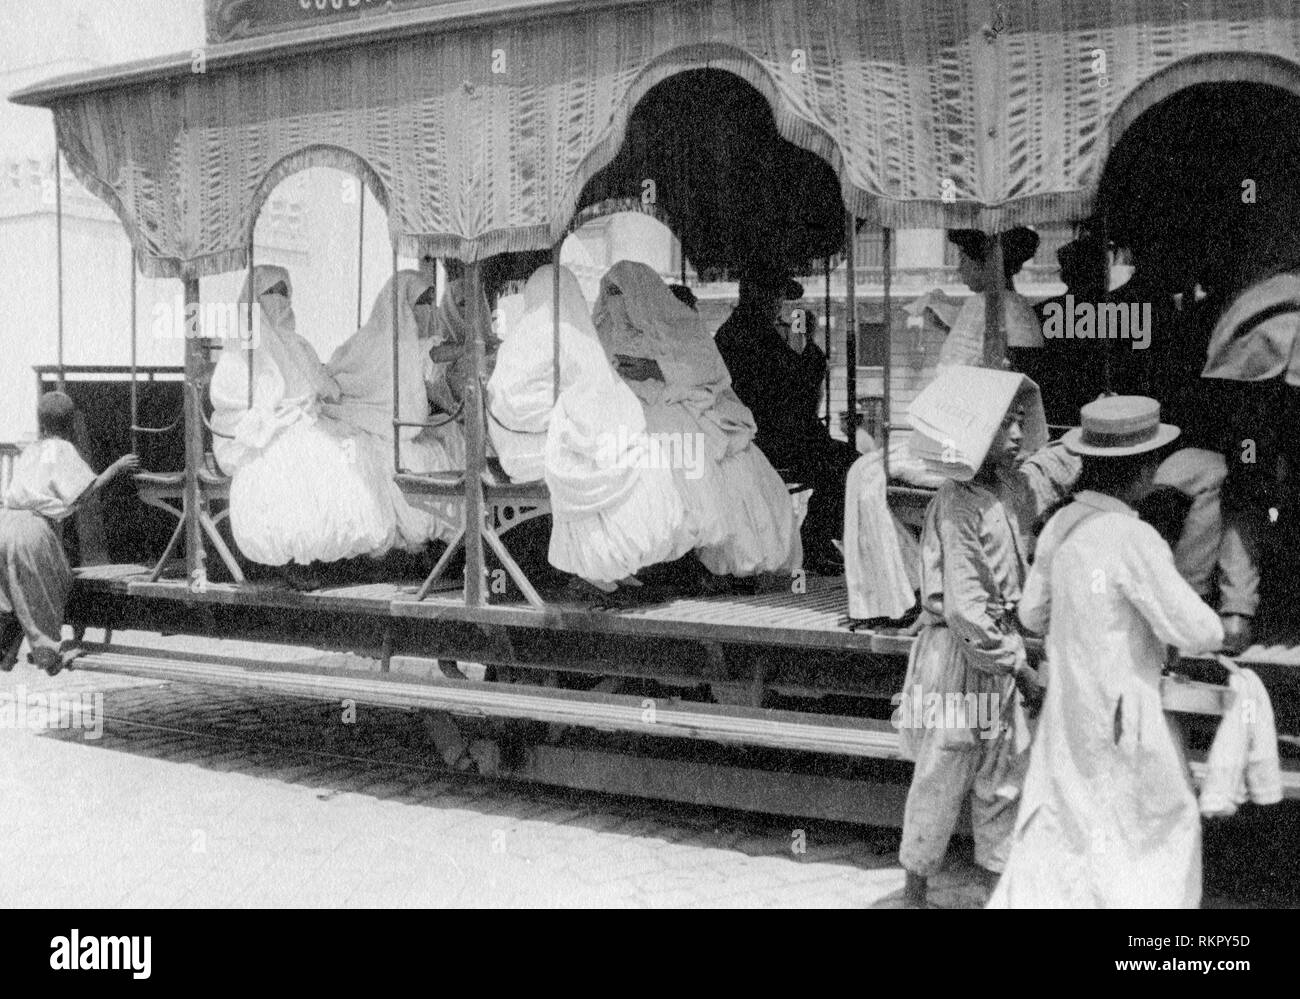 Algeri, femmes, tramway, 1910 Banque D'Images